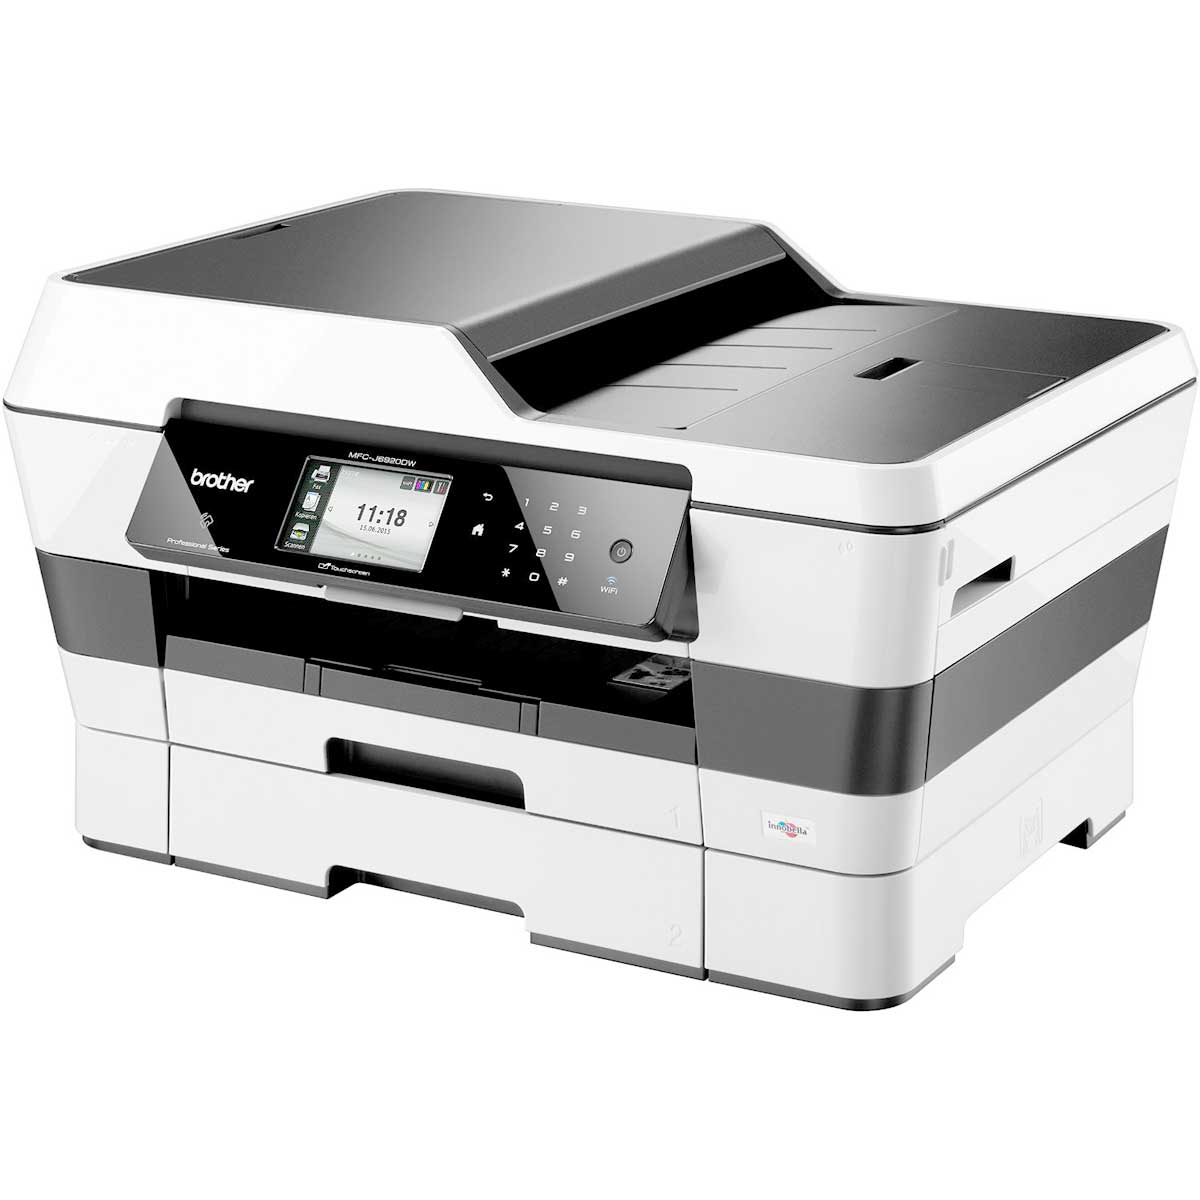 Der Brother MFC-J6920DW günstiger Drucker mit Fax Funktion